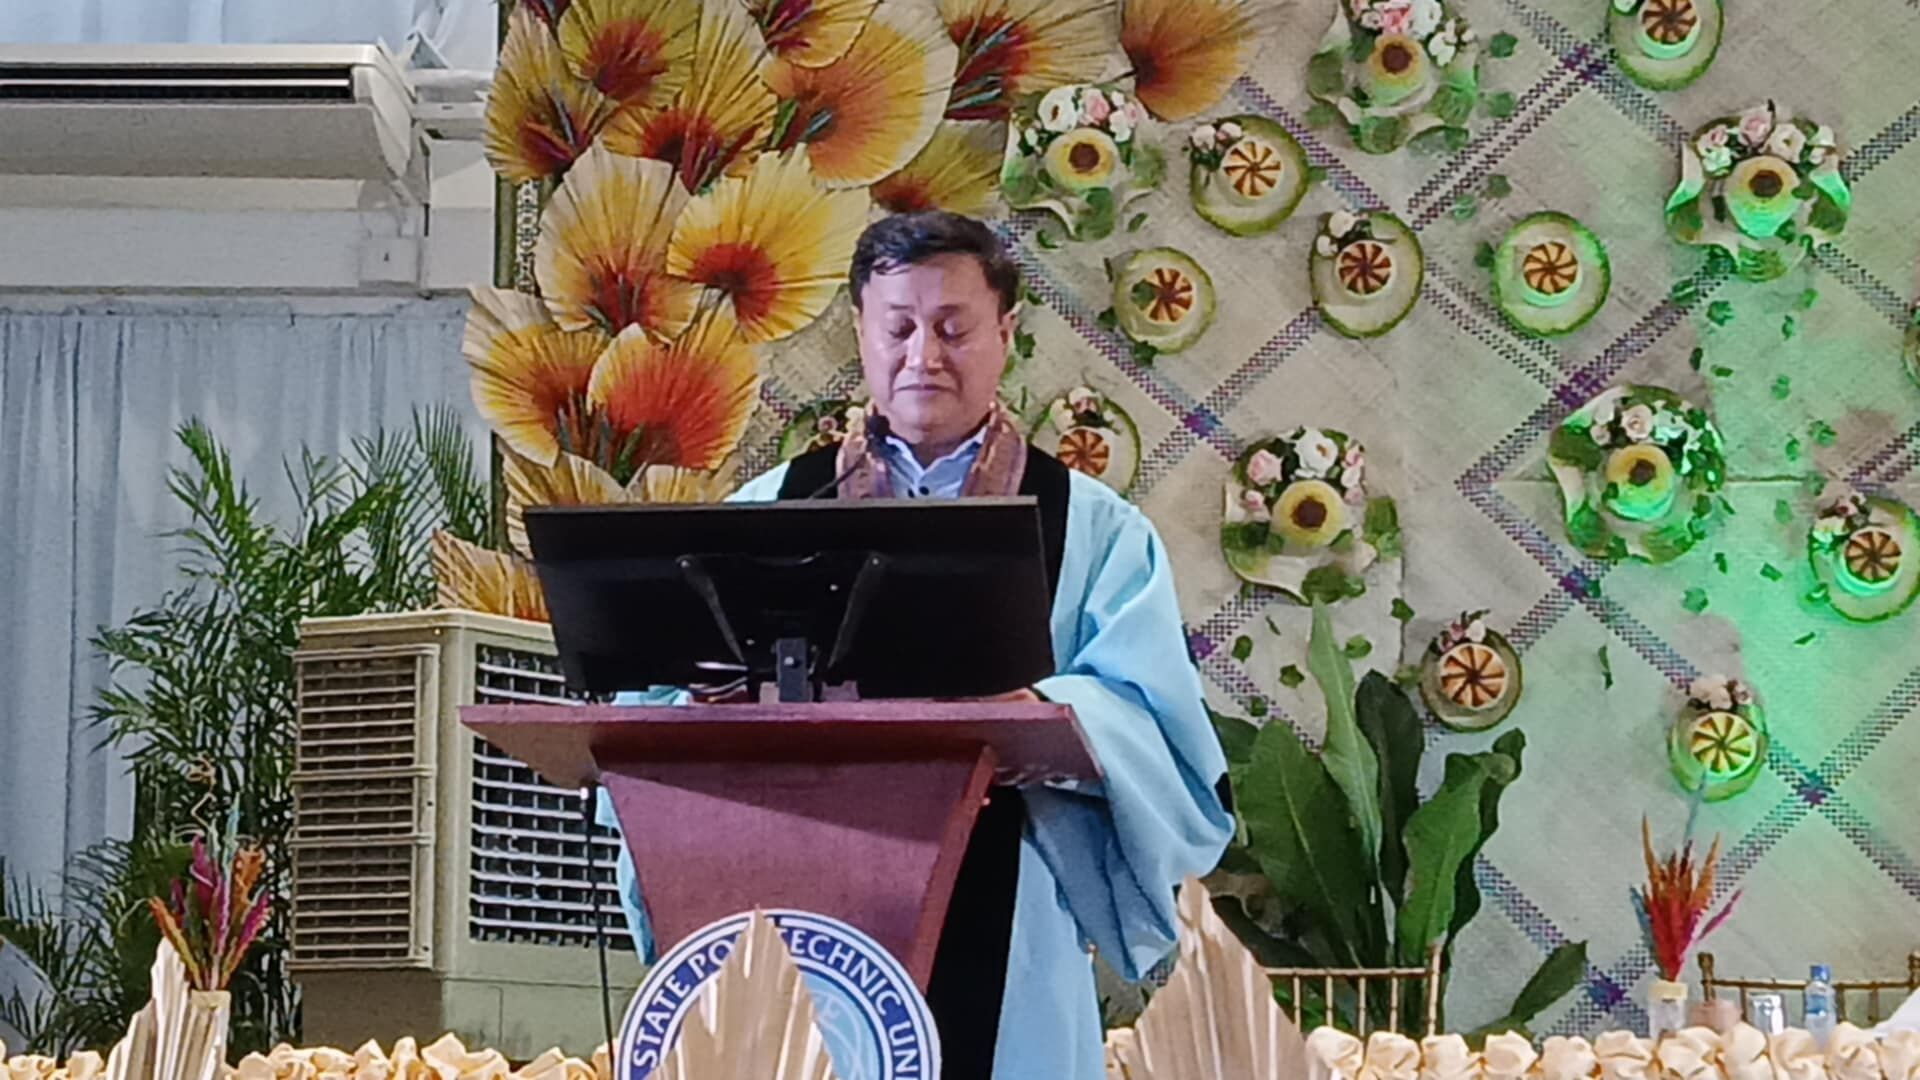 Sen. Tolentino nagsilbing guest speaker sa pagtatapos ng mga mag-aaral sa LSPU-San Pablo City Campus